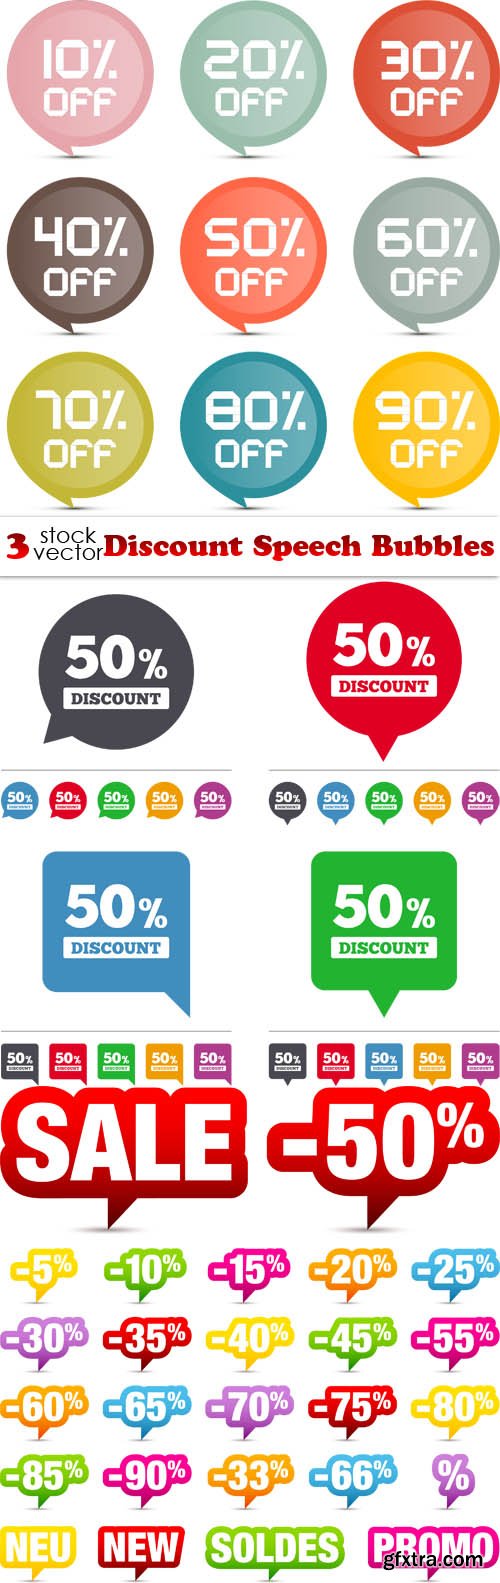 Vectors - Discount Speech Bubbles